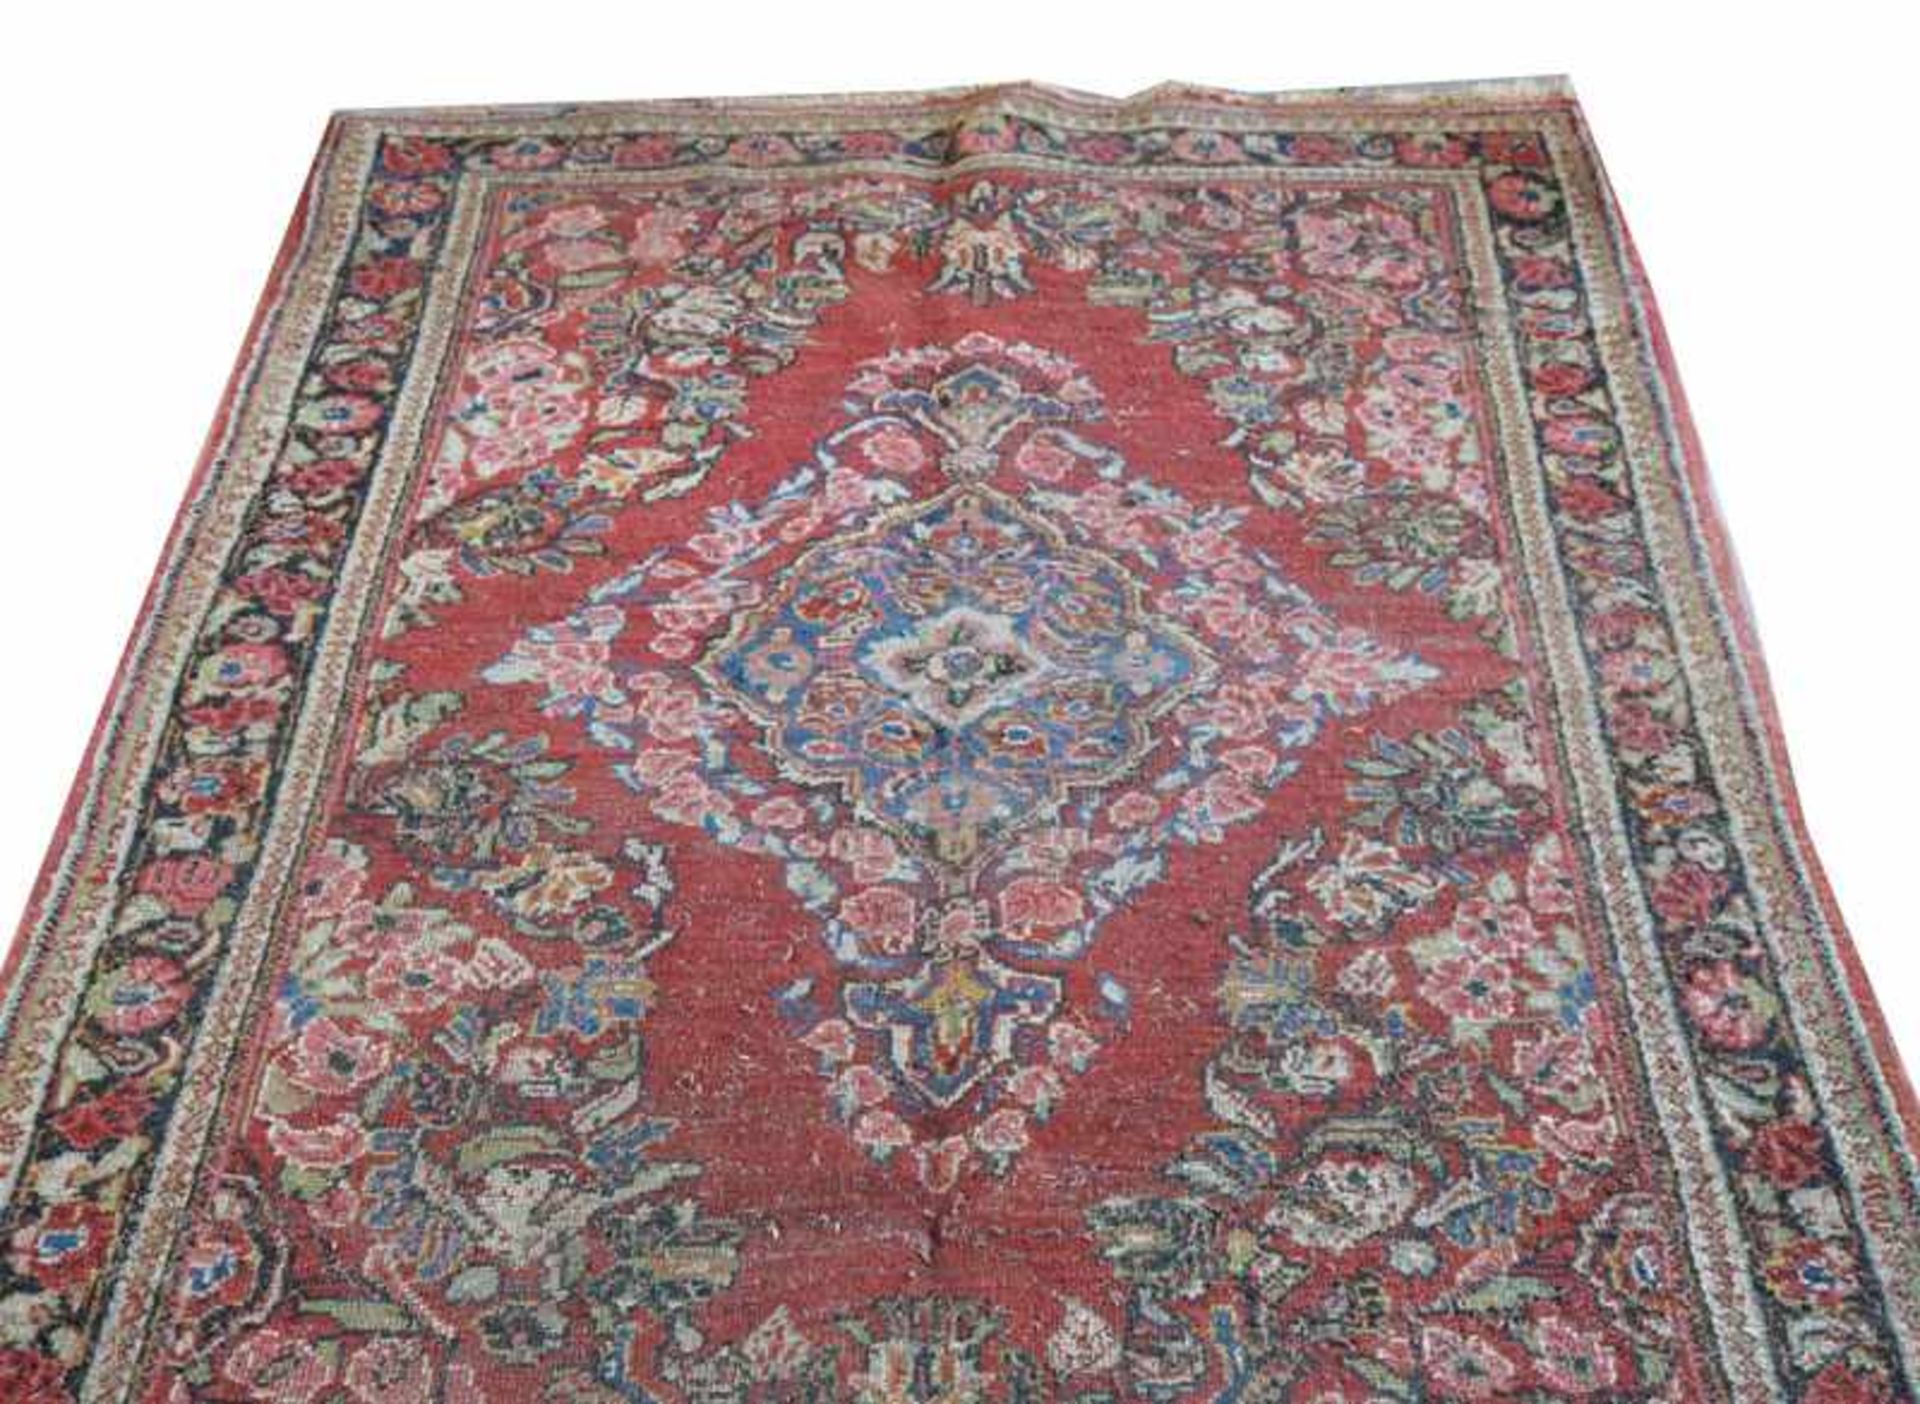 Teppich, Sarough, rot/bunt, 200 cm x 134 cm, starke Gebrauchsspuren